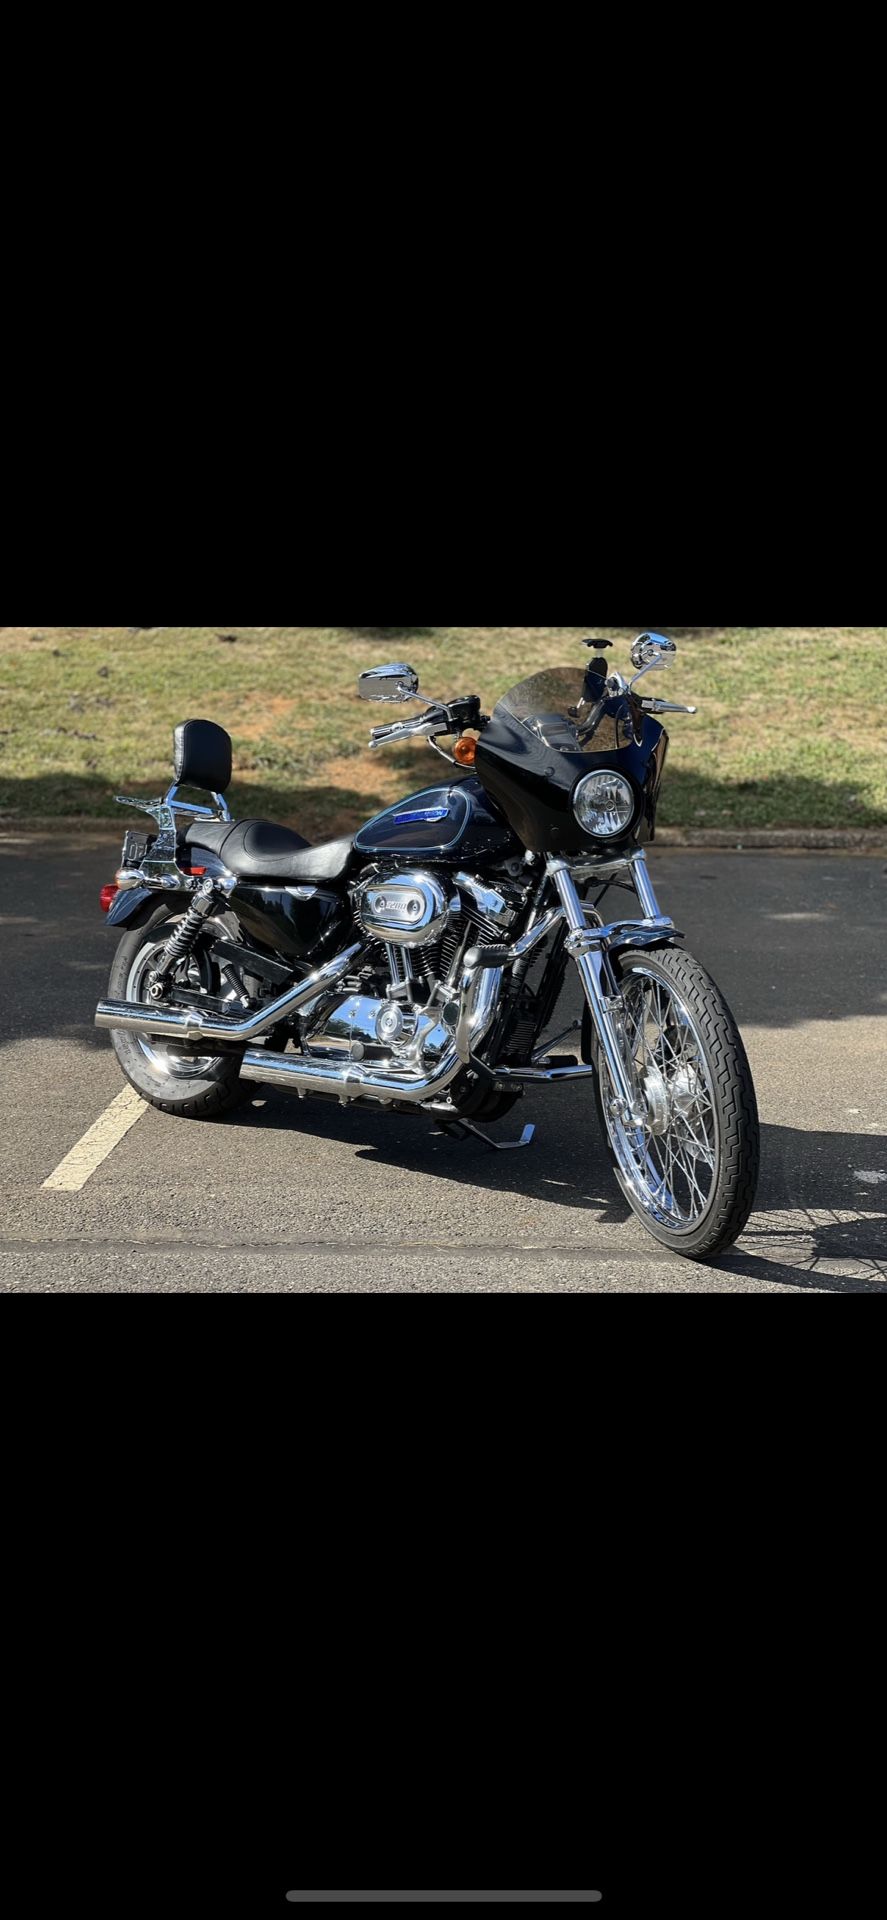 2009 Harley Sportster 1200 Custom